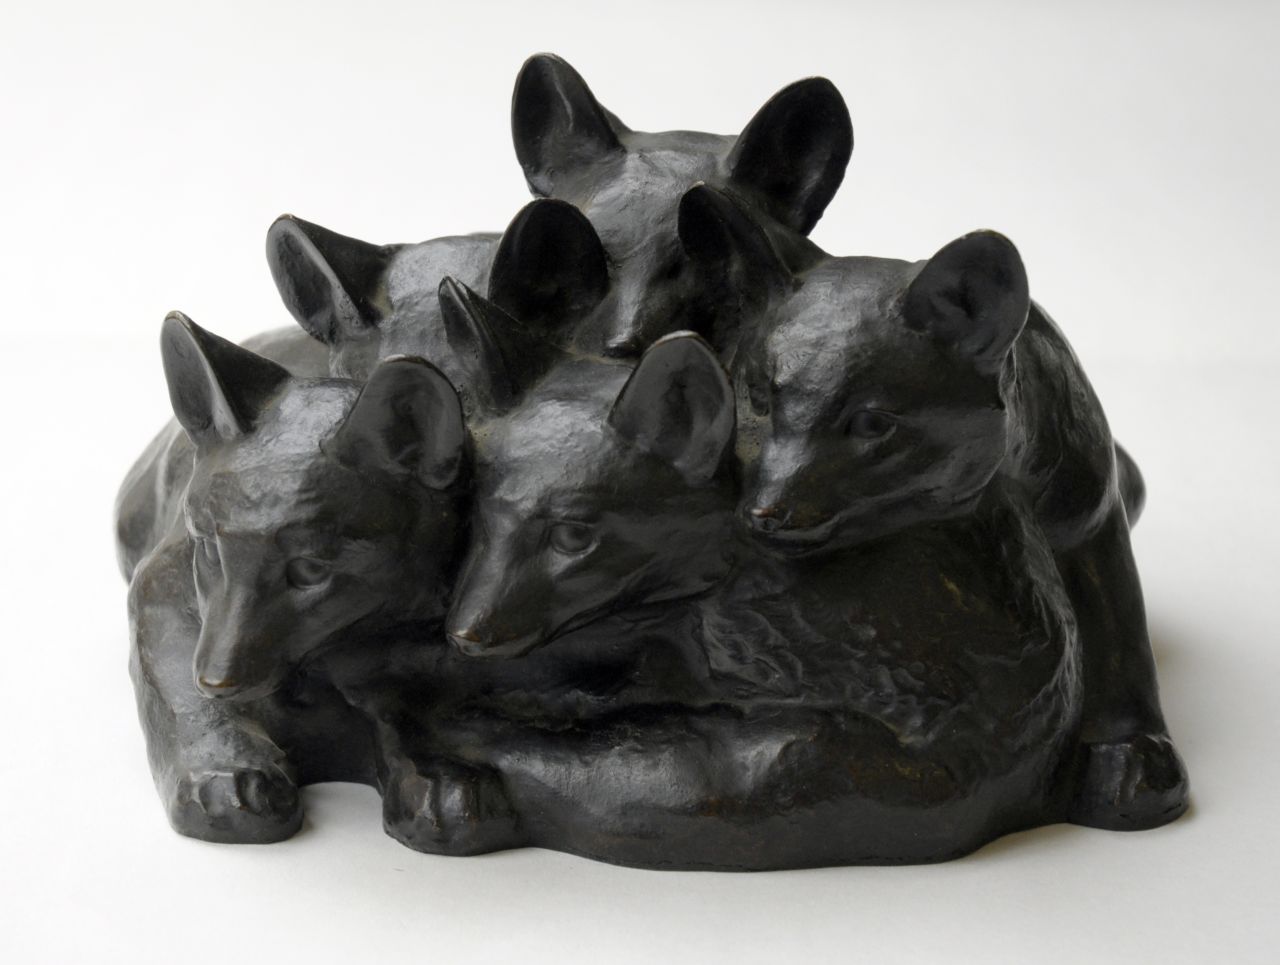 Zügel W.  | Wilhelm 'Willy' Zügel, Jonge vossen, brons 15,5 x 24,0 cm, gesigneerd op rand (rechts)